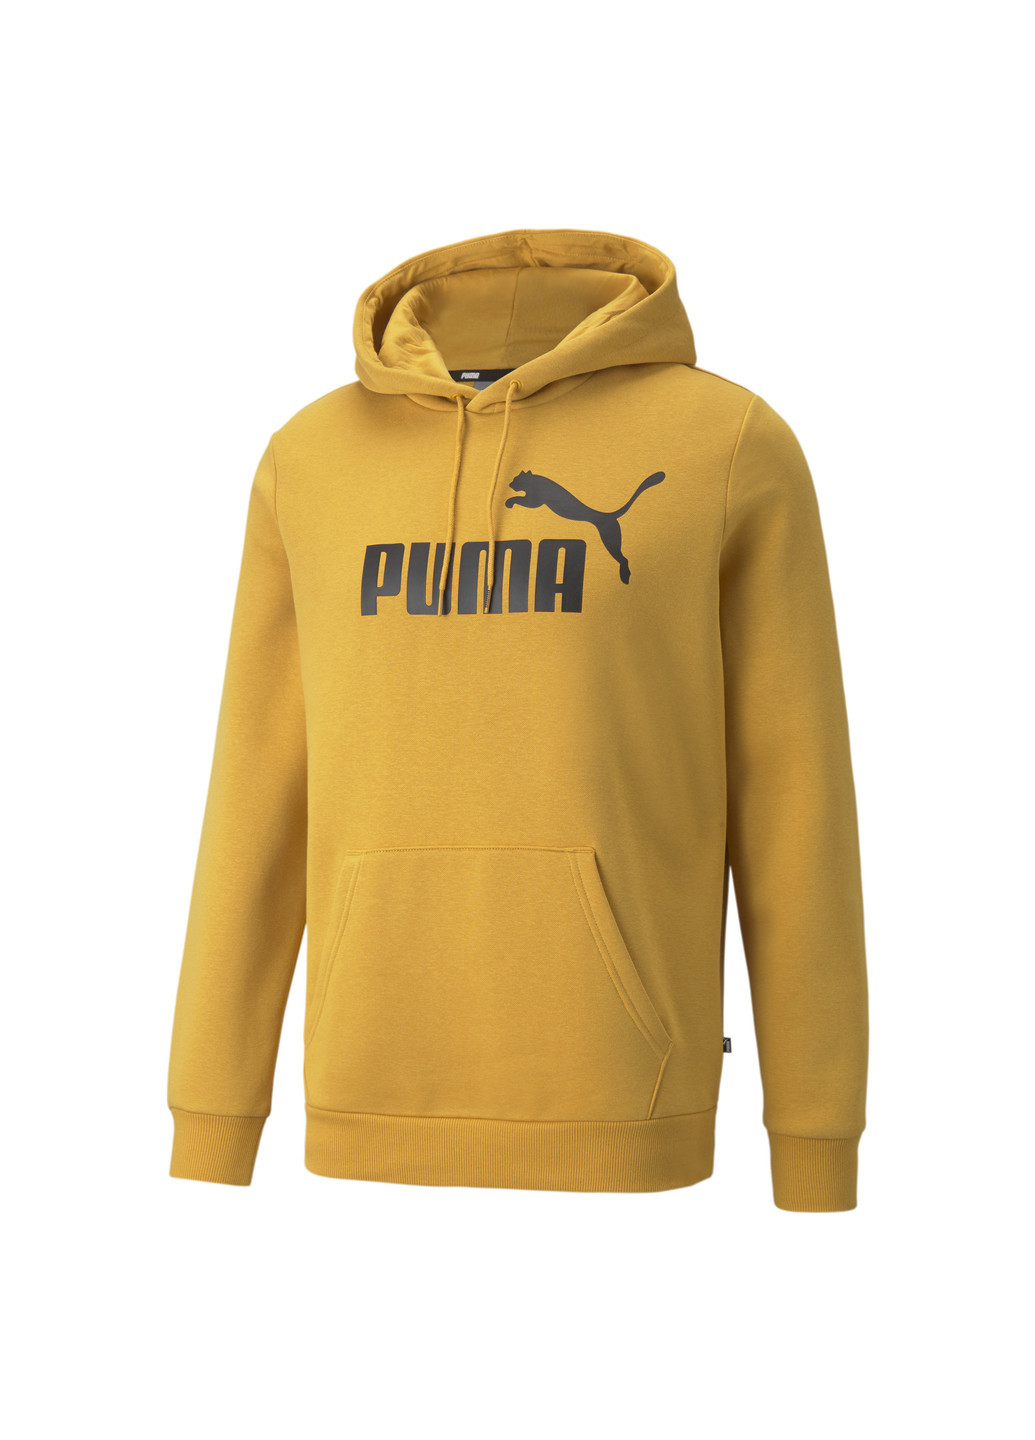 Толстовка Essentials Big Logo Men's Hoodie Puma однотонная жёлтая спортивная хлопок, полиэстер, эластан